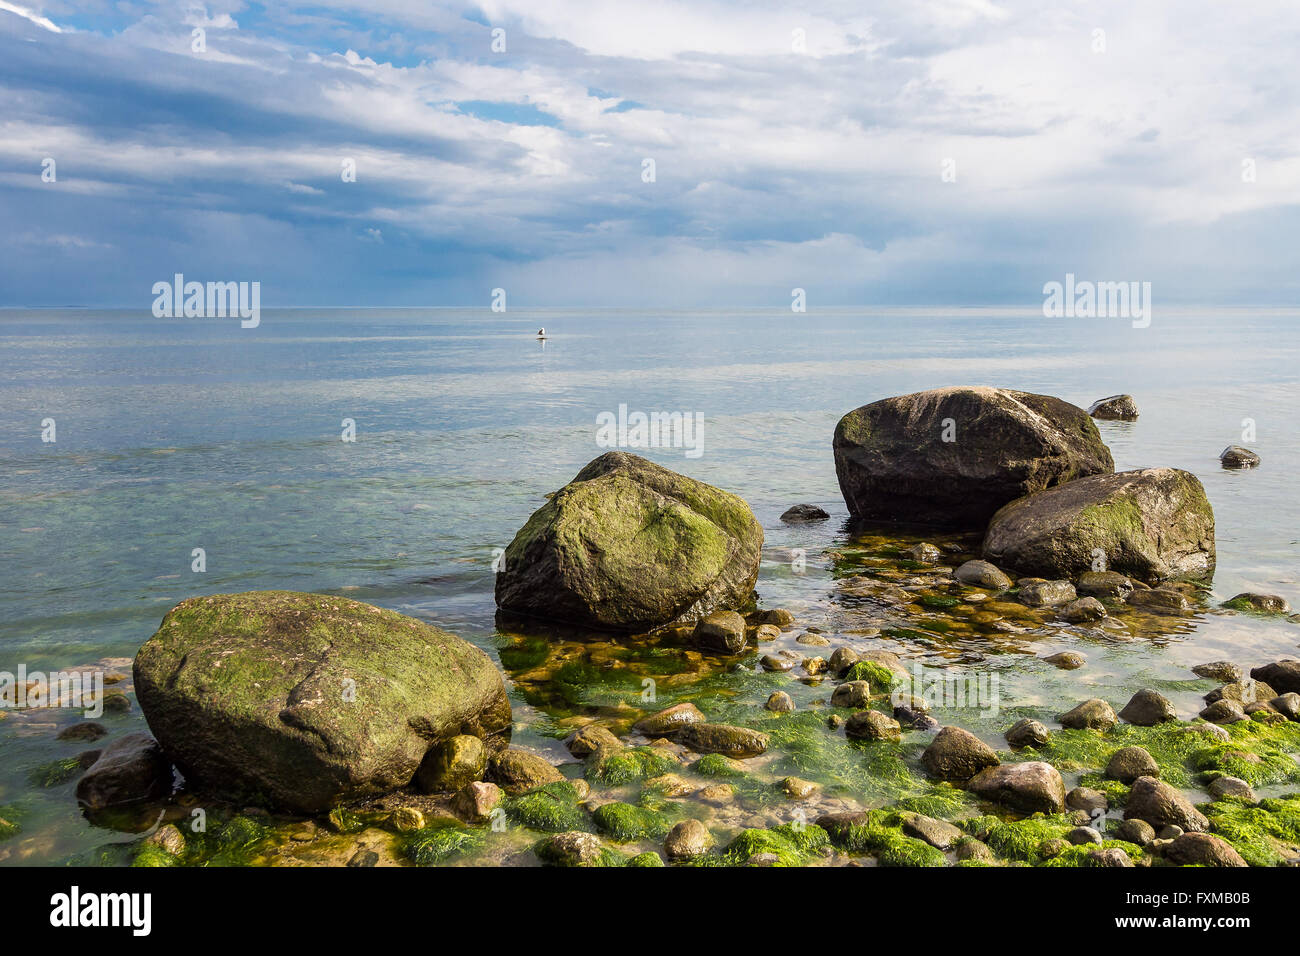 Findlinge am Ufer der Ostsee Stockfoto